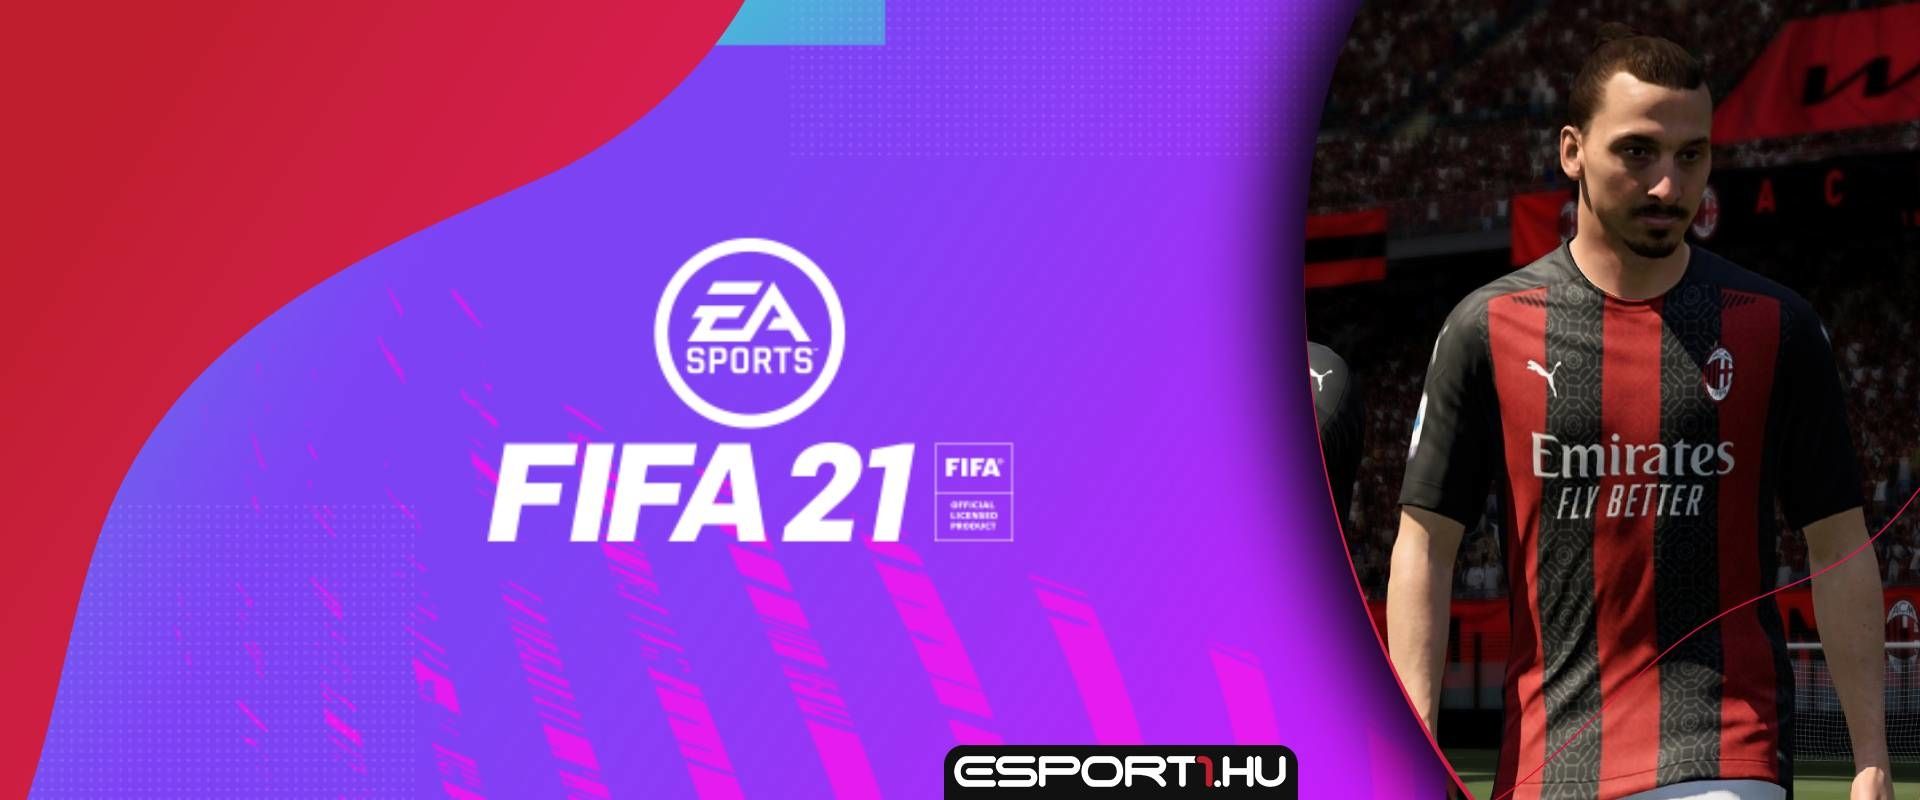 Az EA határozott módon tette helyre Ibrahimovicékat az elégedetlenség kapcsán